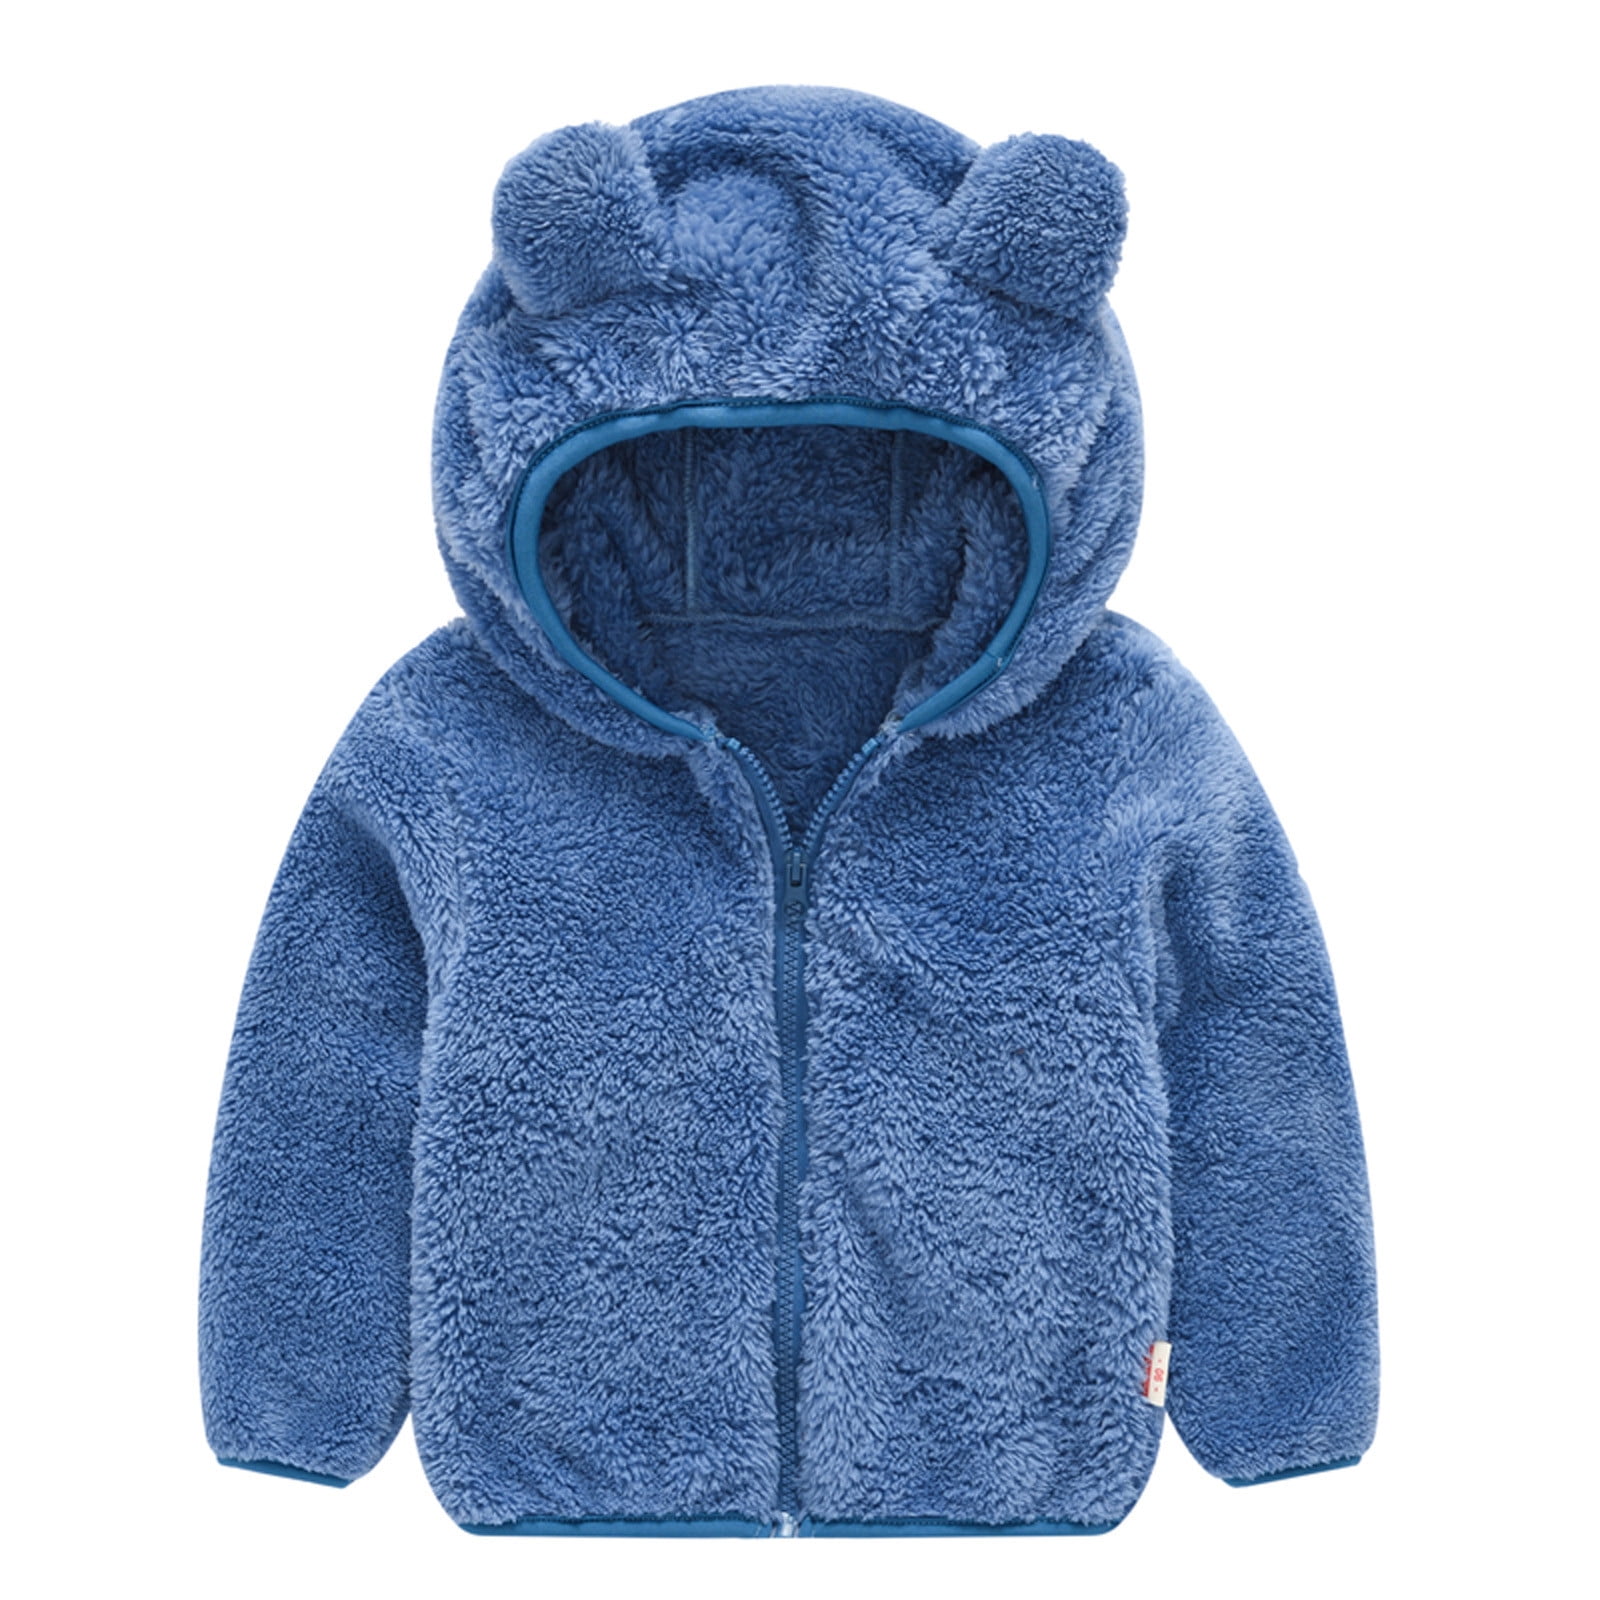 Kids Baby Boys Hooded Winter Warm Coat Outerwear Toddler Jacket Windbreaker Coat 